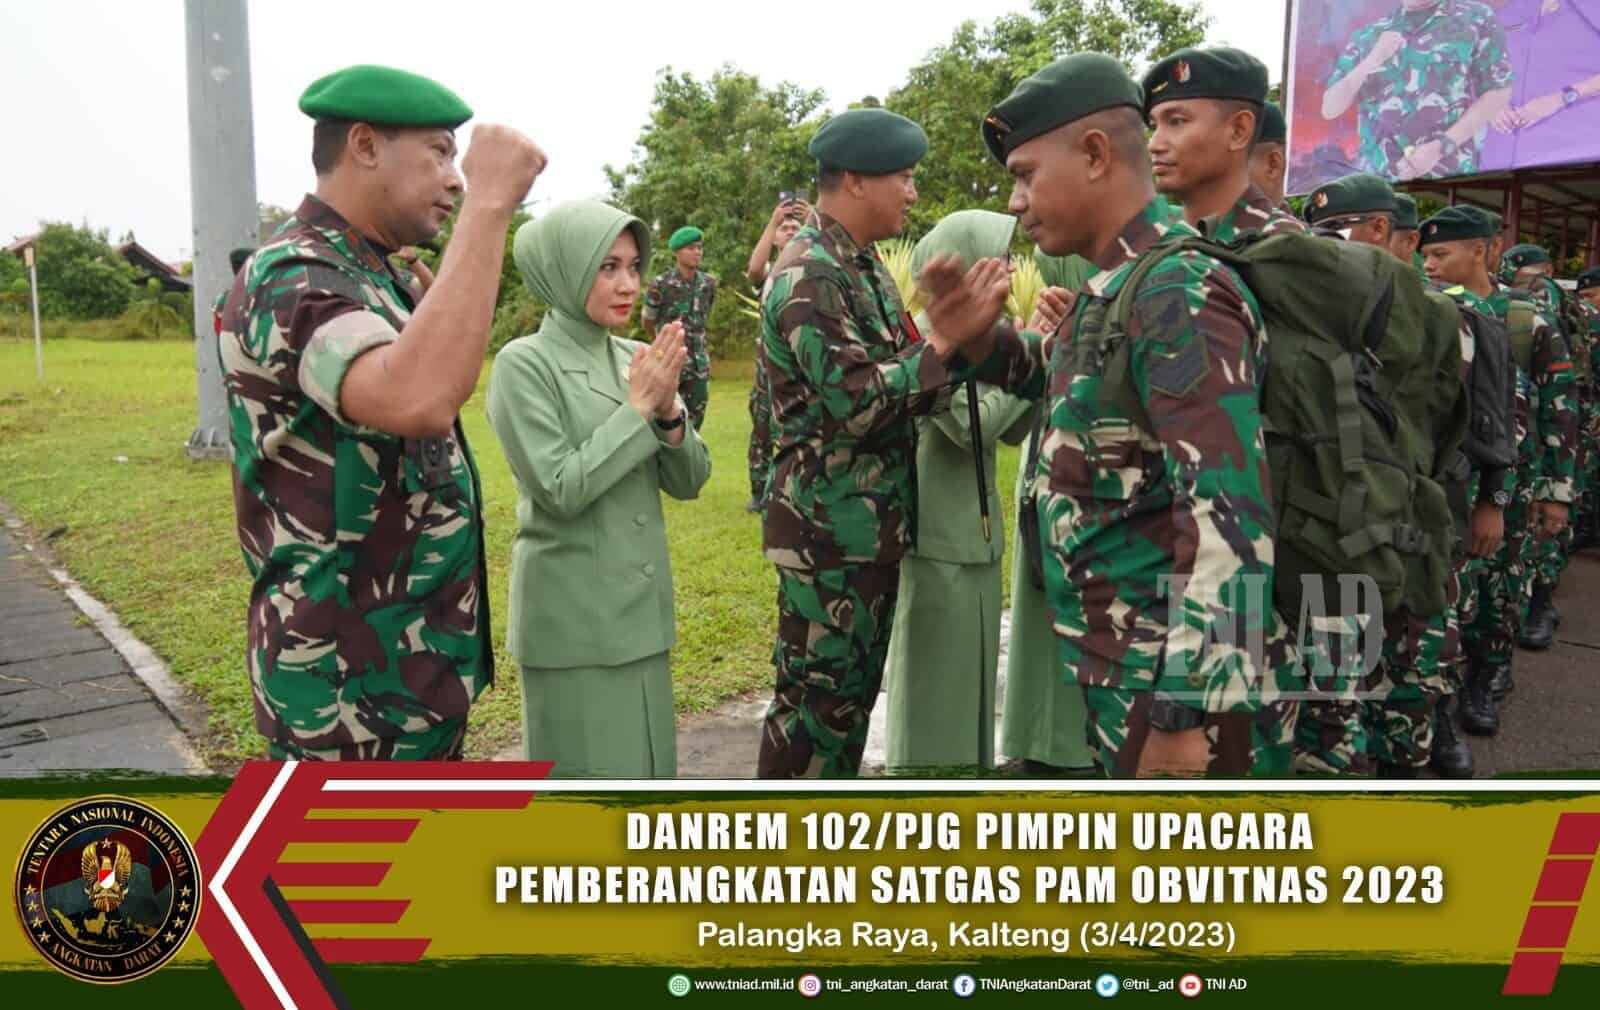 Danrem 102/Pjg Pimpin Upacara Pemberangkatan Satgas Pam Obvitnas 2023.